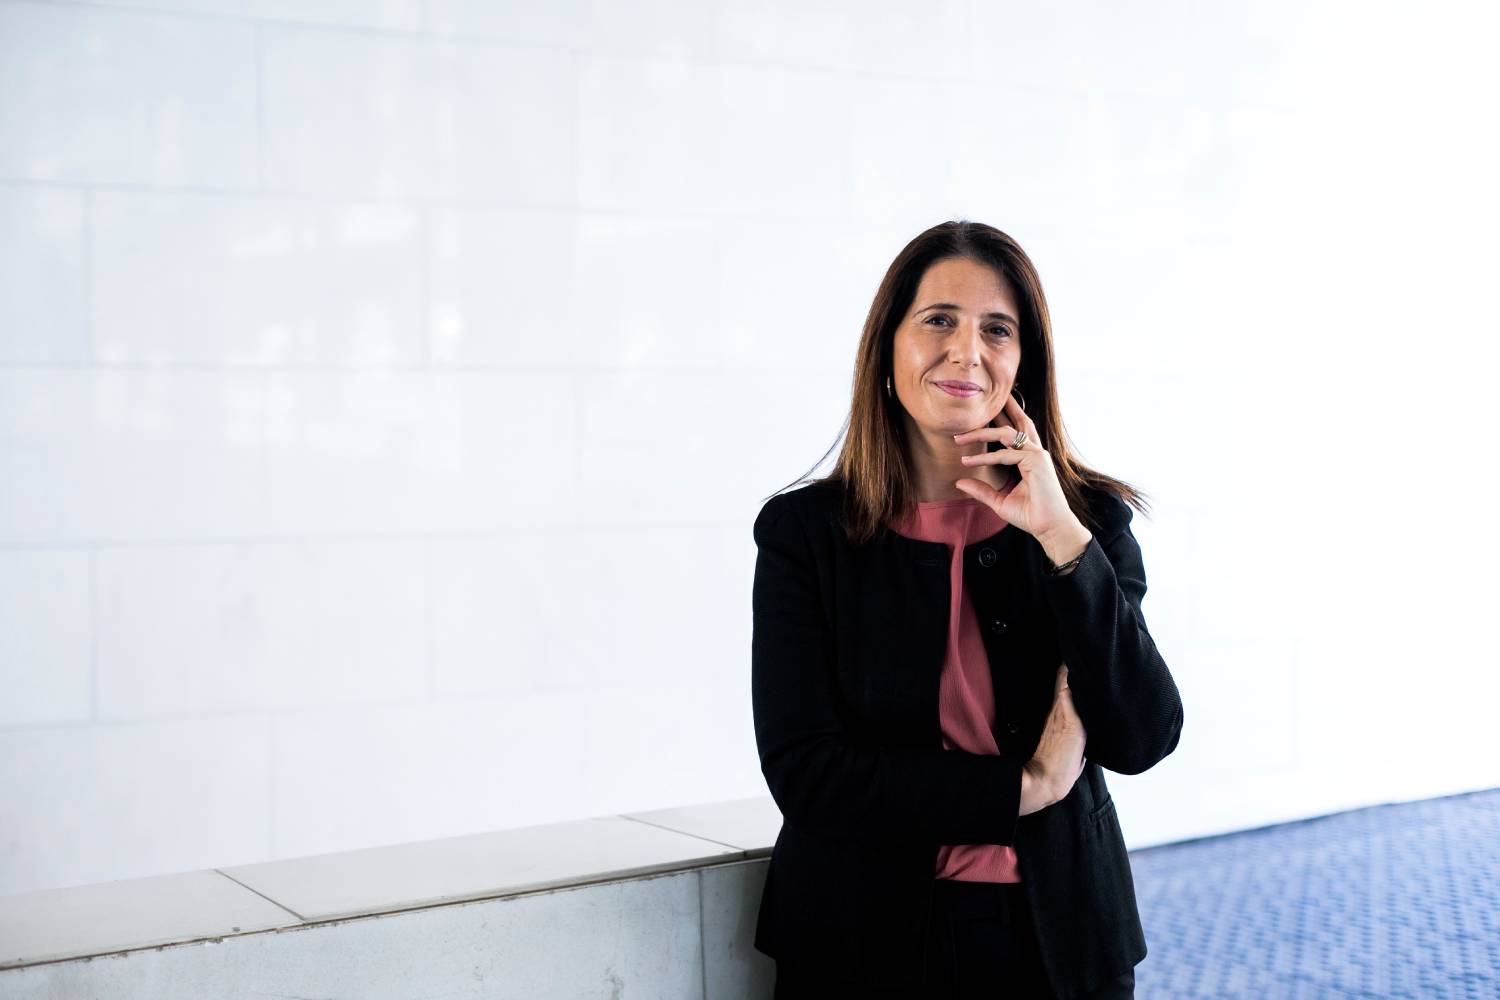 Lidia Martín, directora general de Almirall Iberia, lleva un año como presidenta de la patronal española del Autocuidado, Anefp. Foto: SONIA TRONCOSO. 